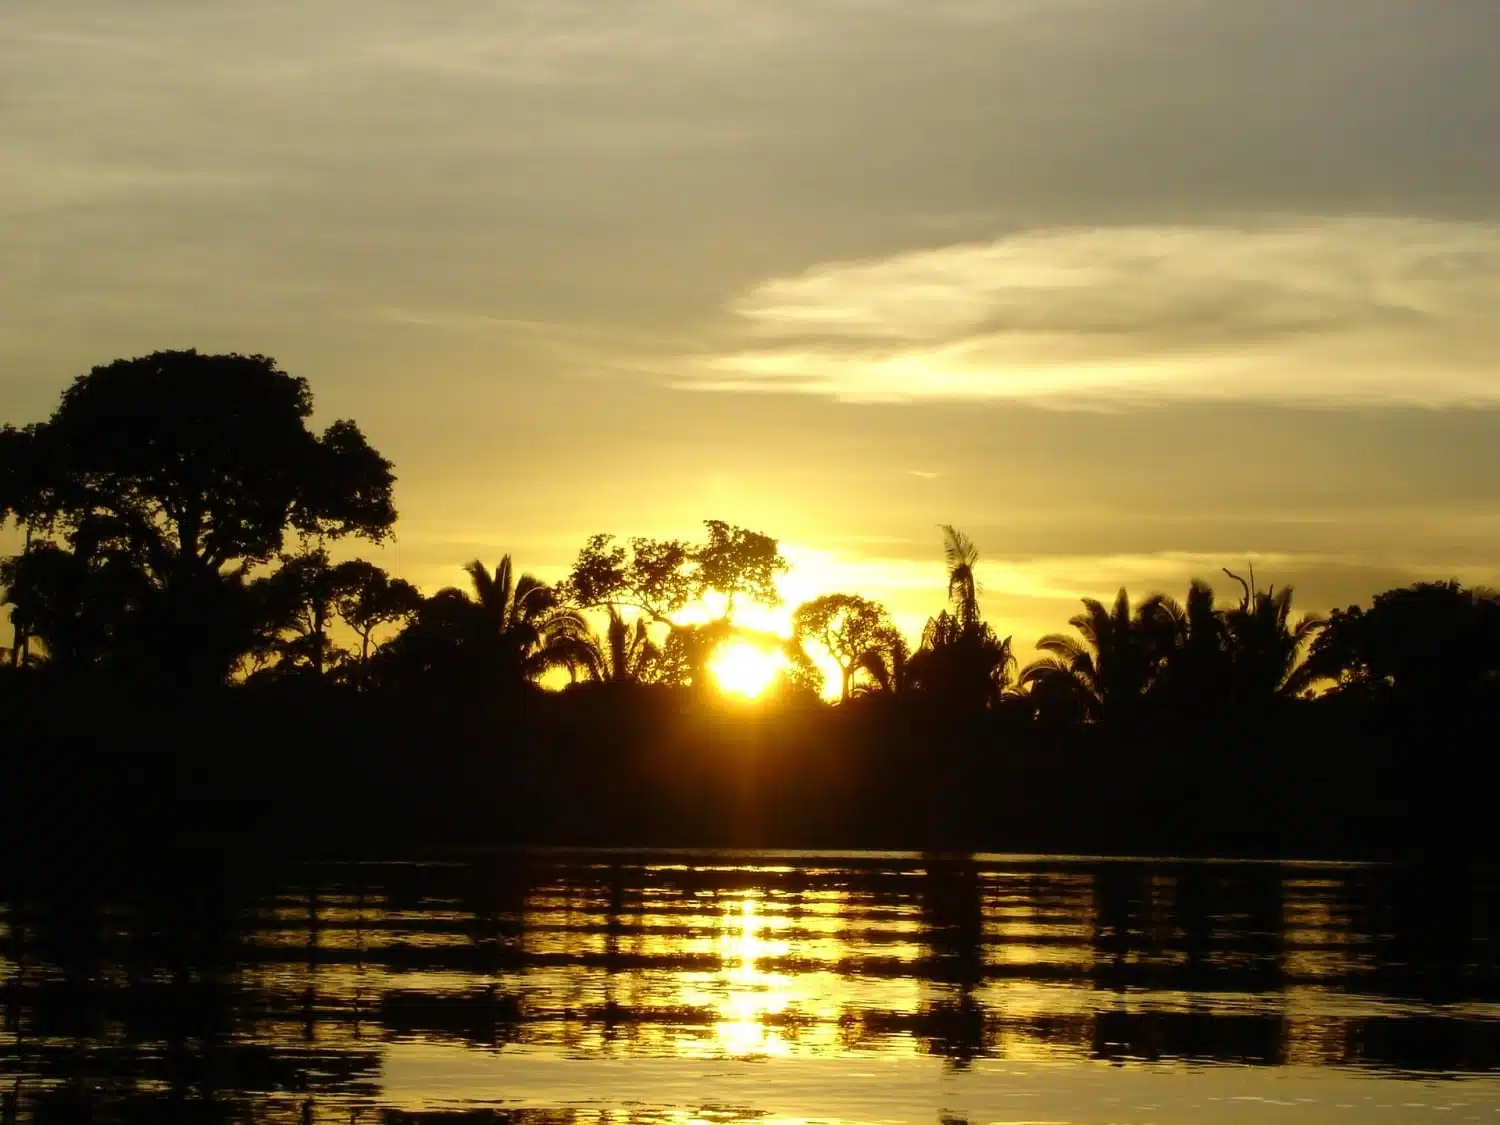 Sunset over the Amazon Rainforest